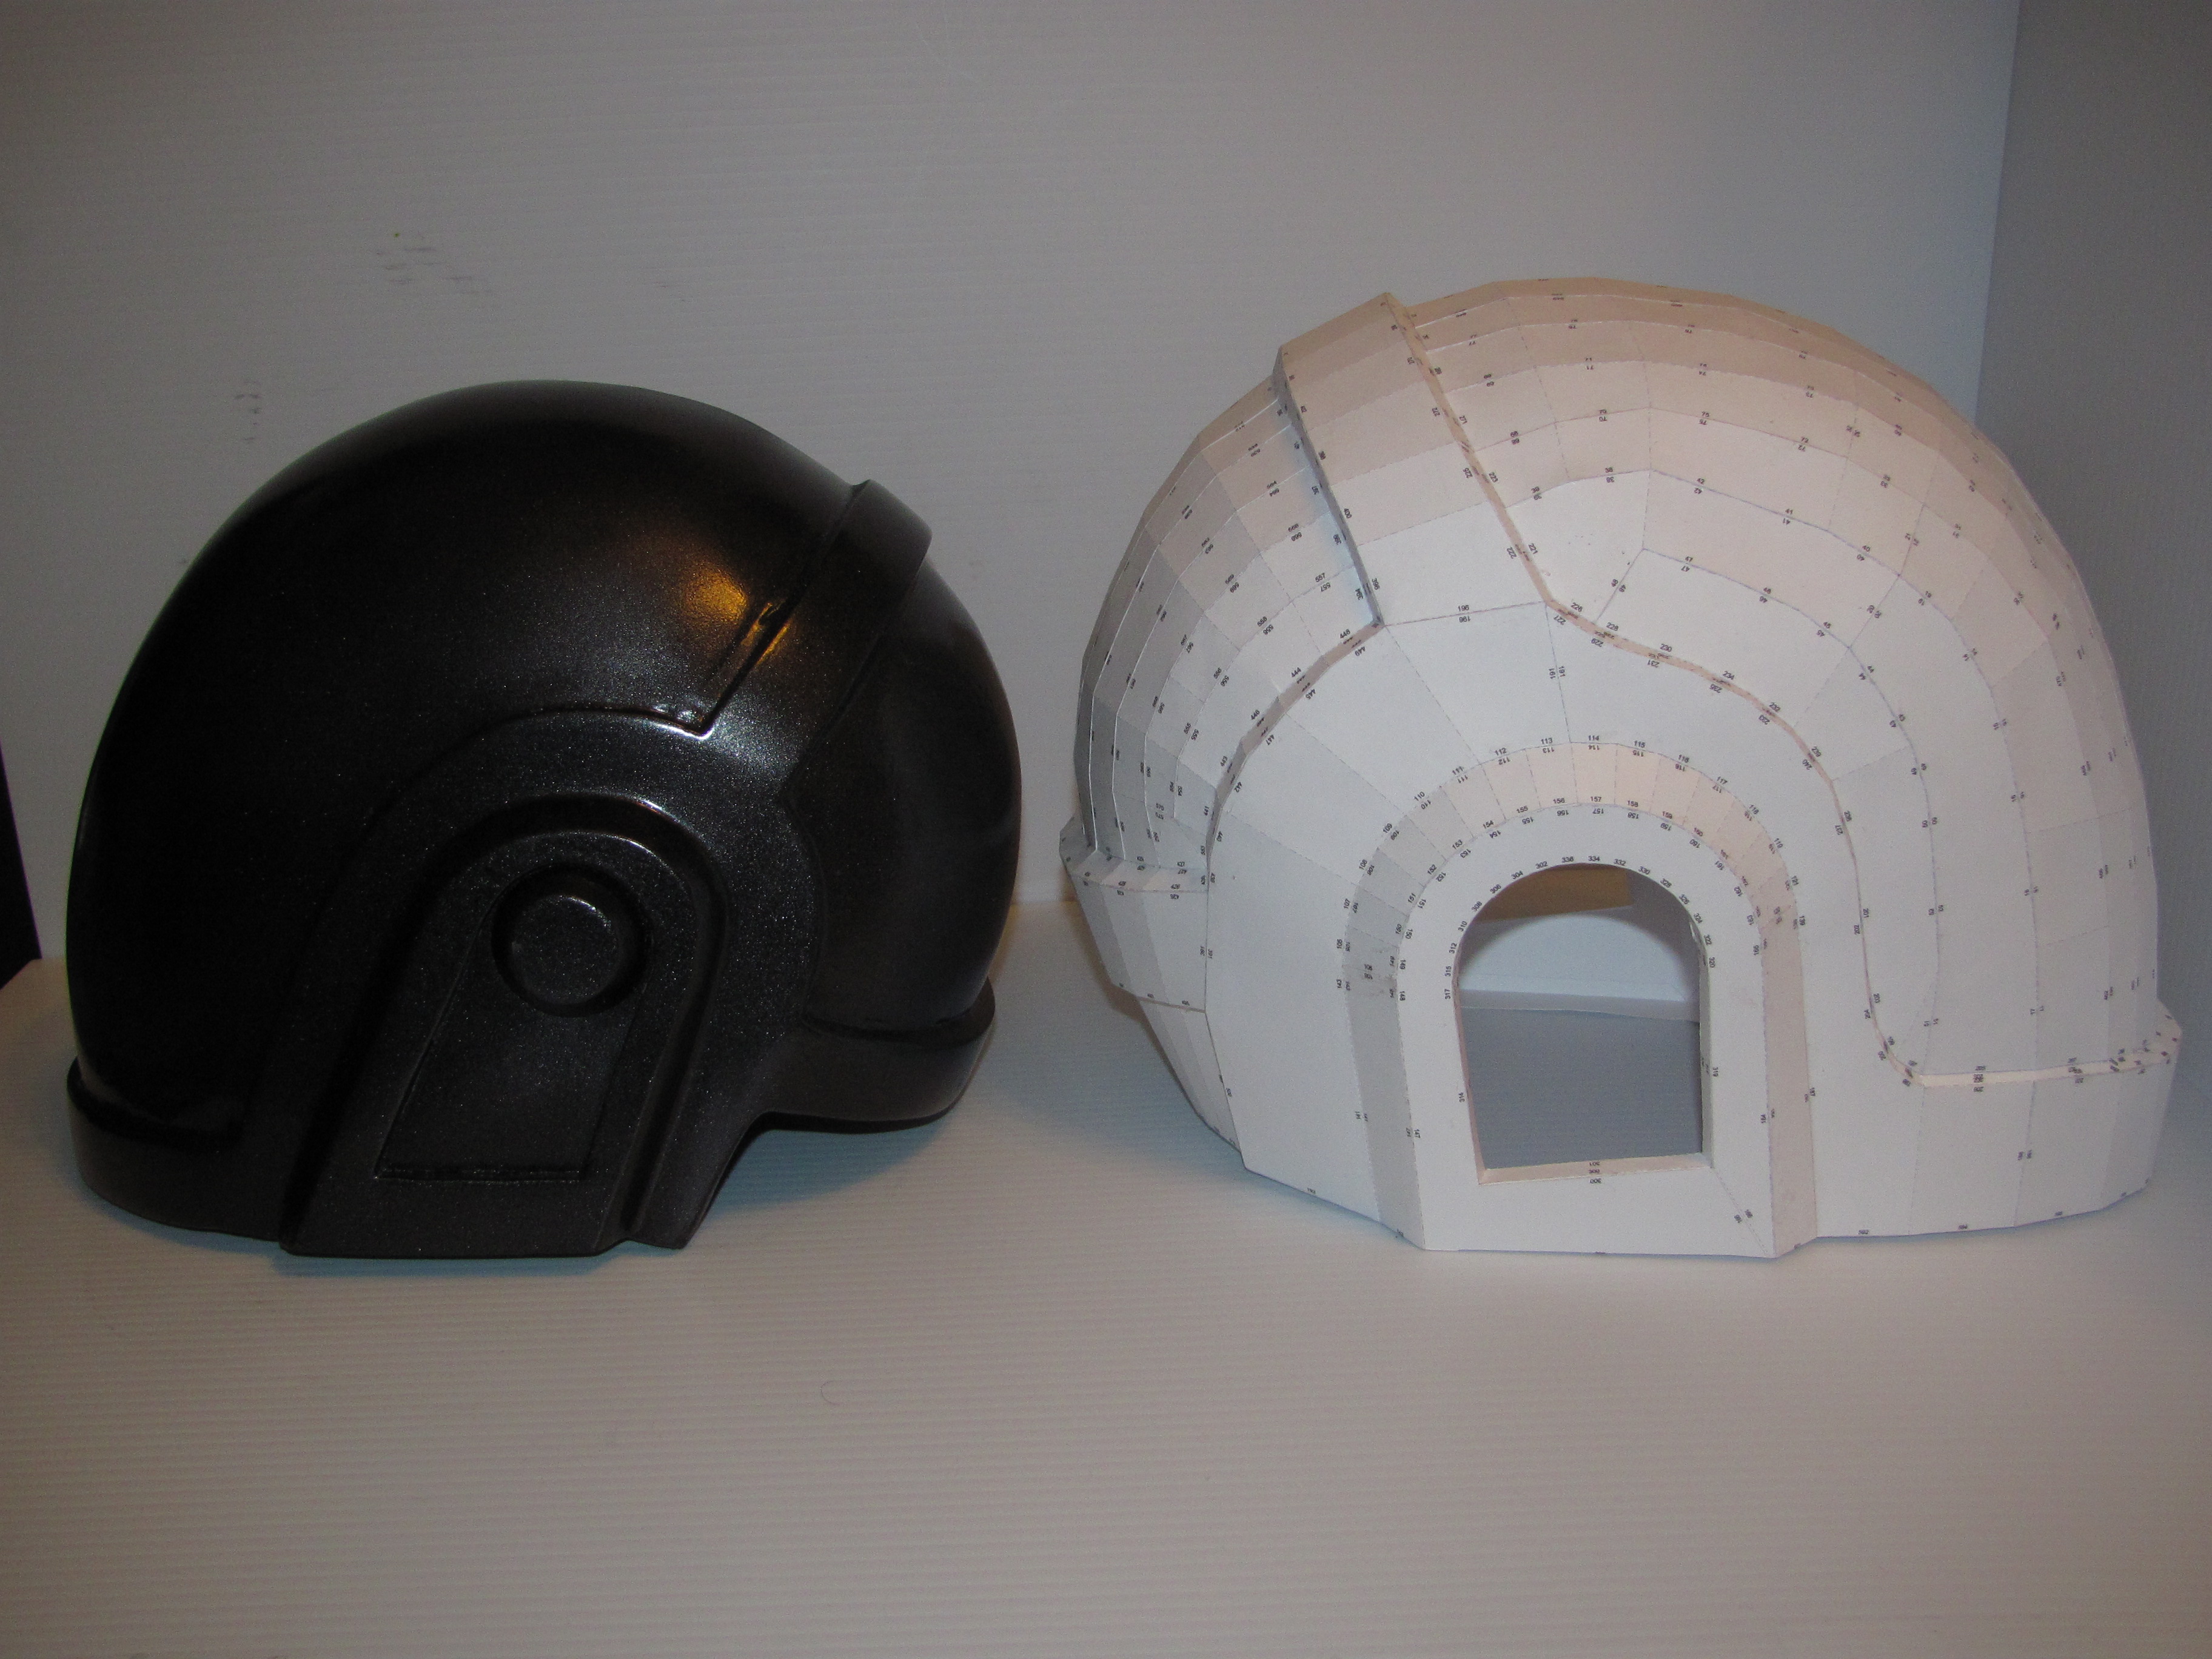 Daft Punk Helmet Template Be964d1d4de7e2cb2e3d8725a28166cd